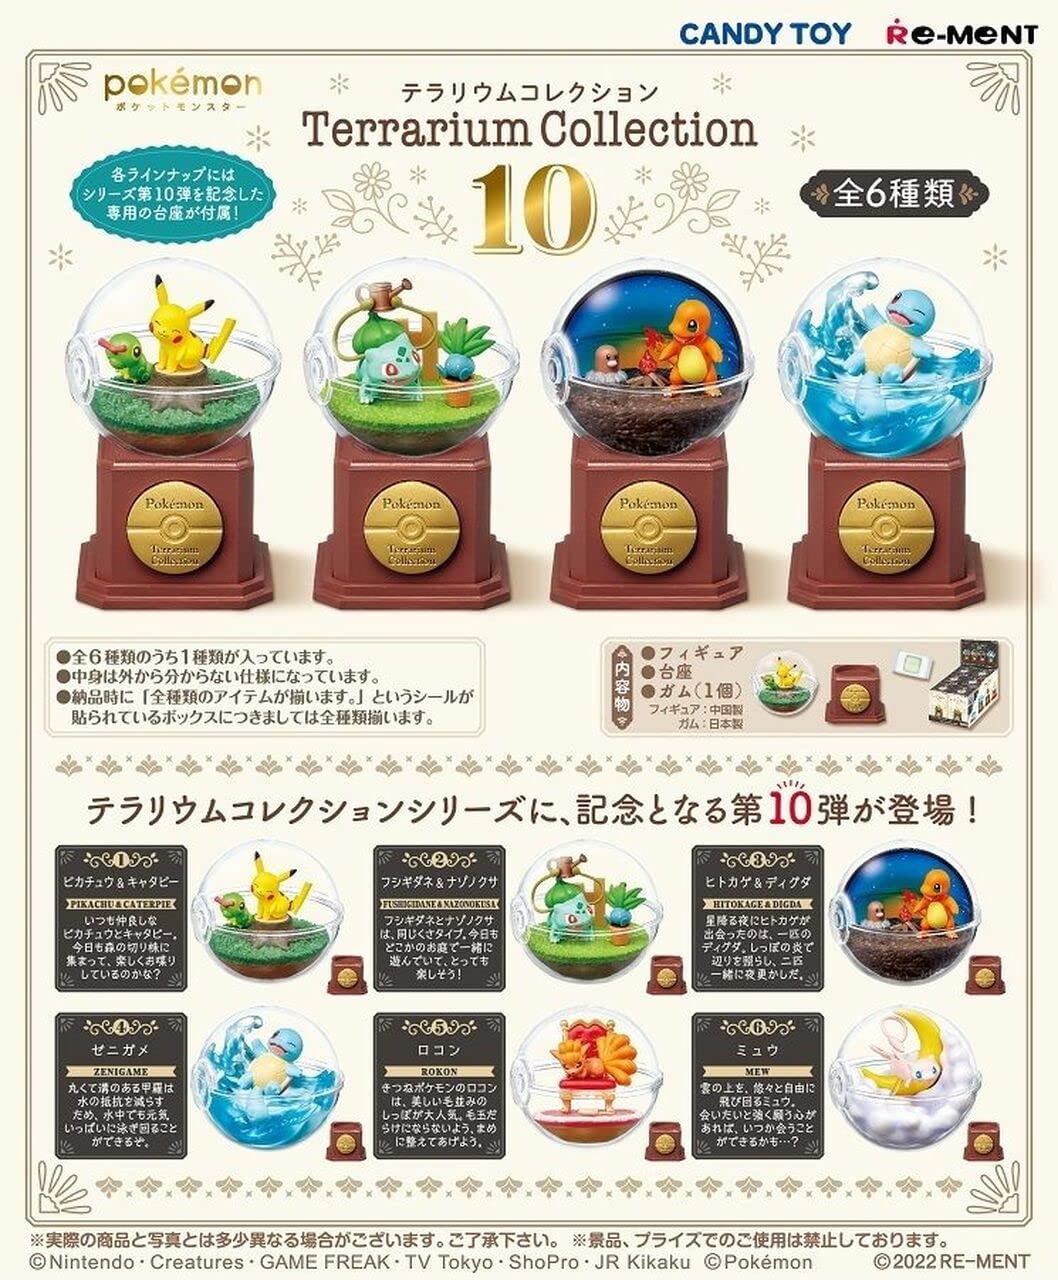 Re-Ment Mini Figures Complete Box (Set of 6) - Terrarium Collection 10